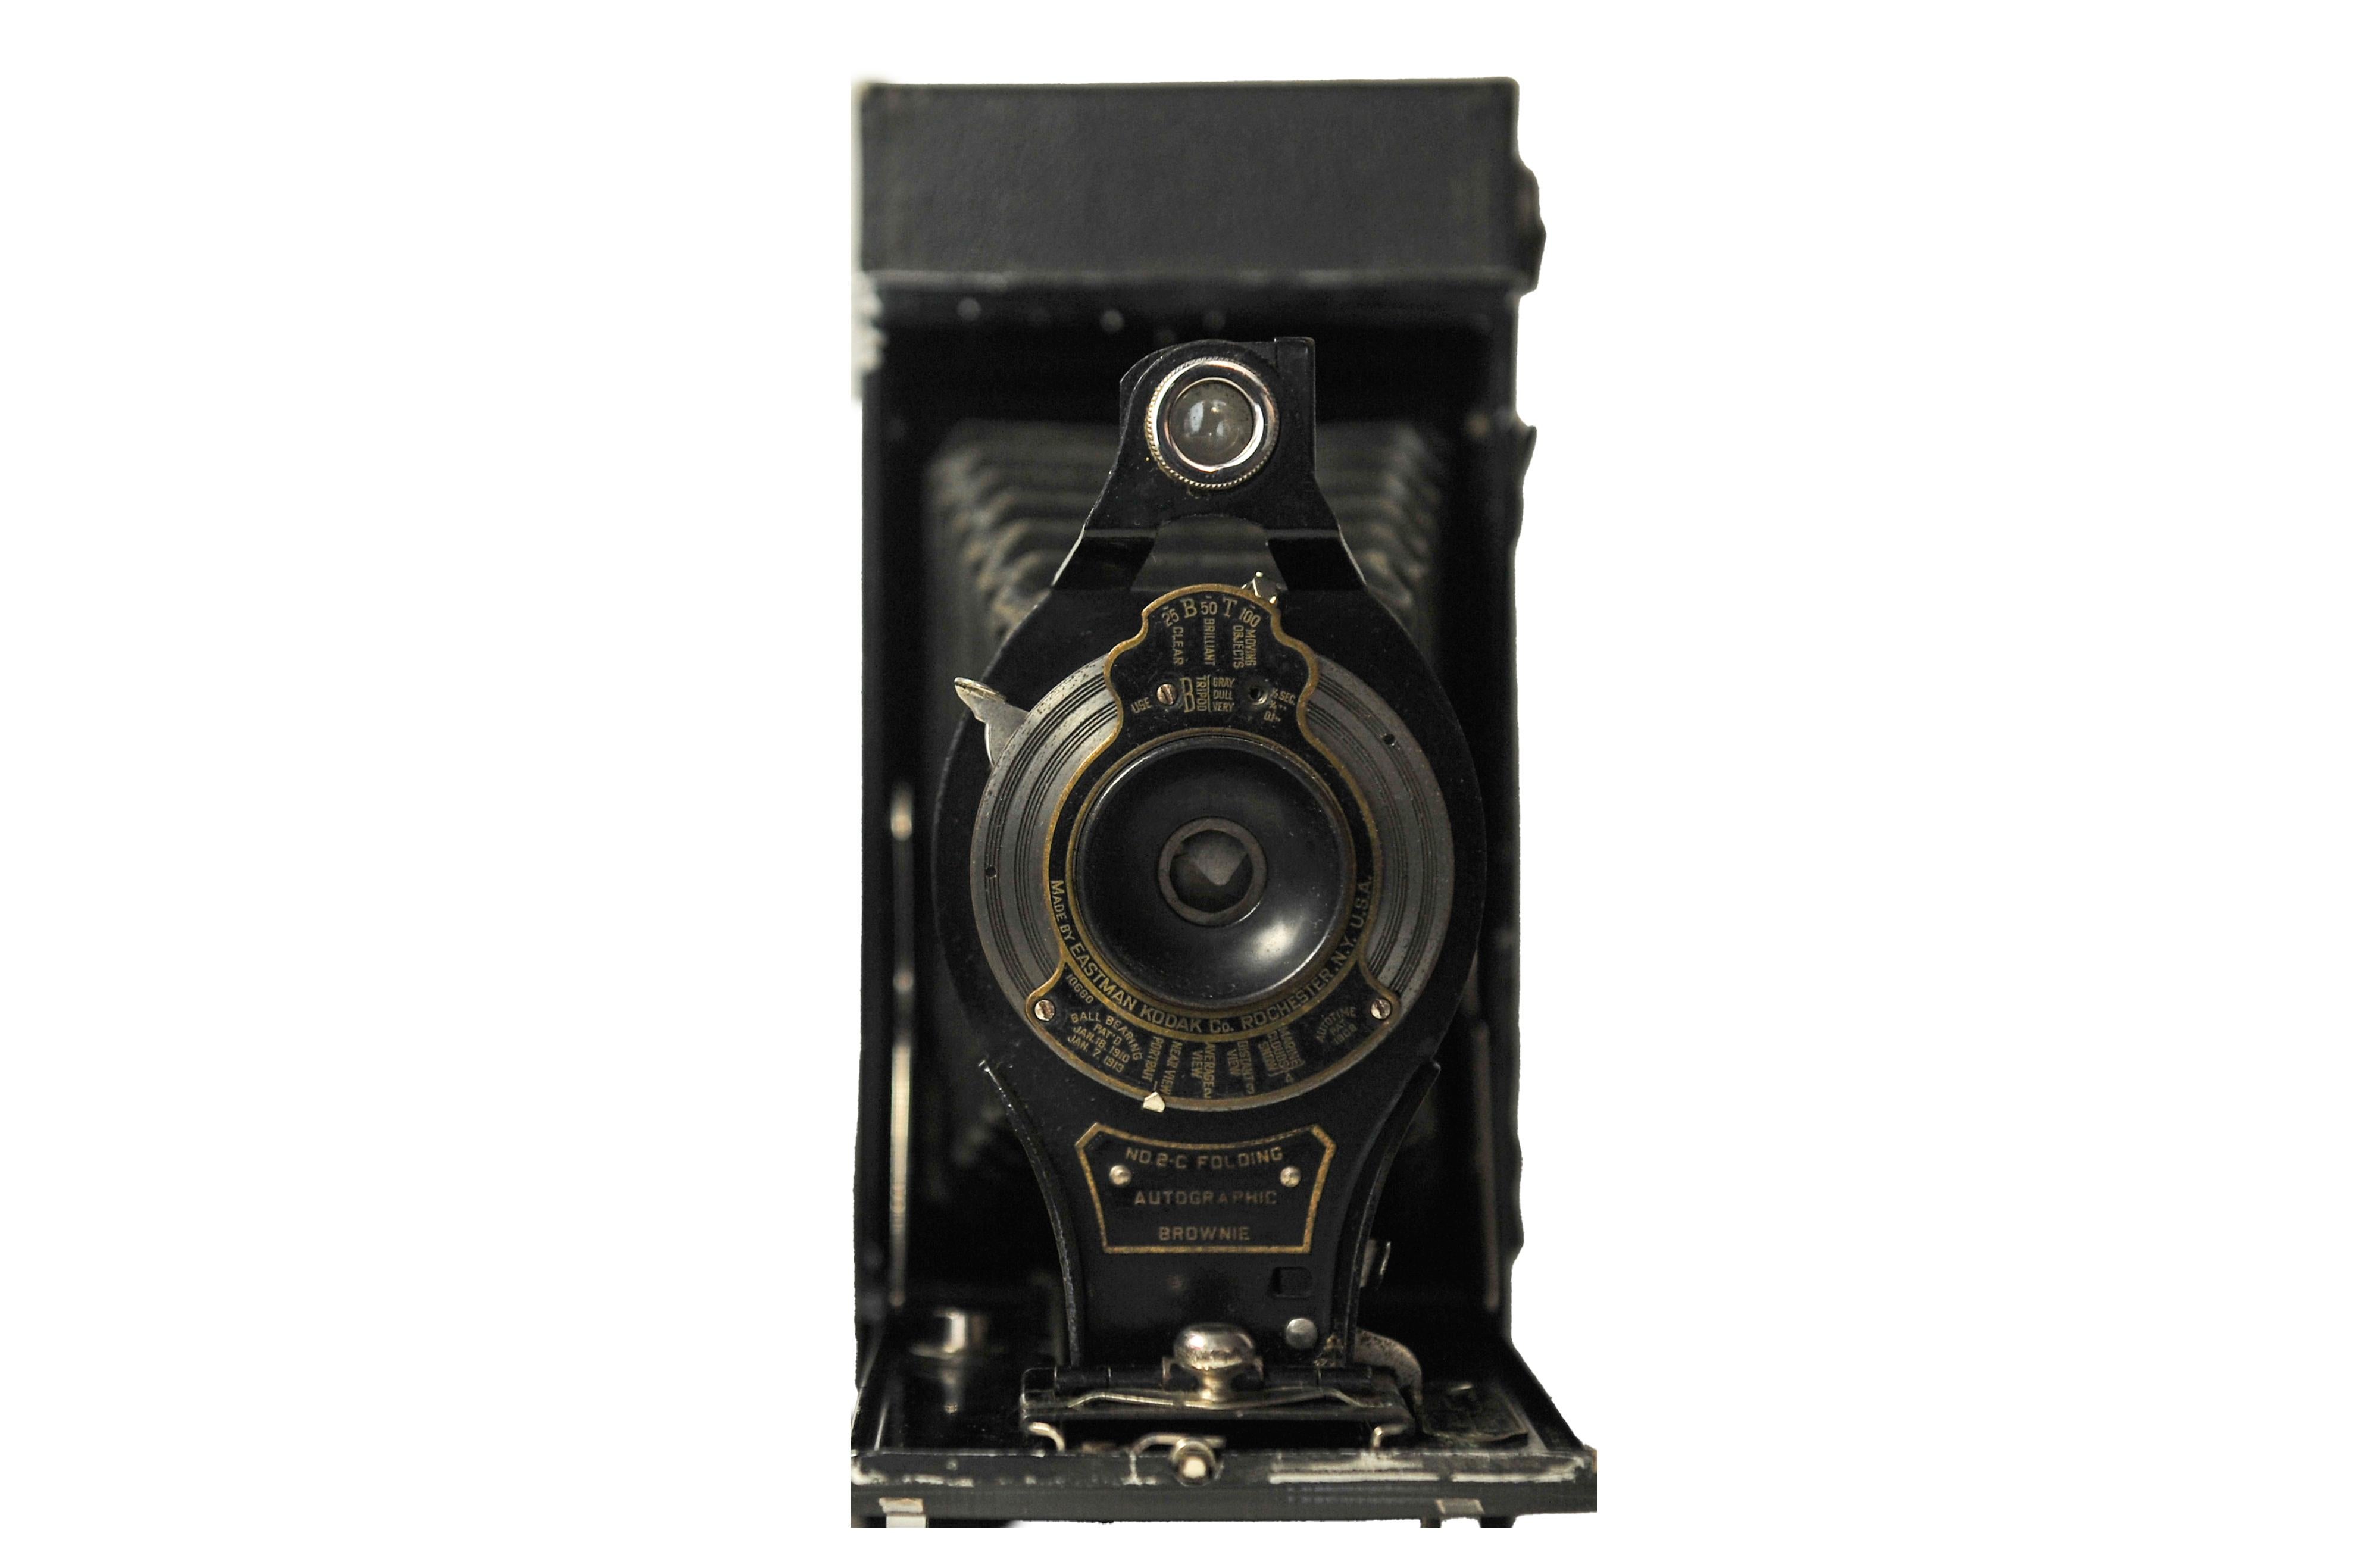 eastman's kodak camera